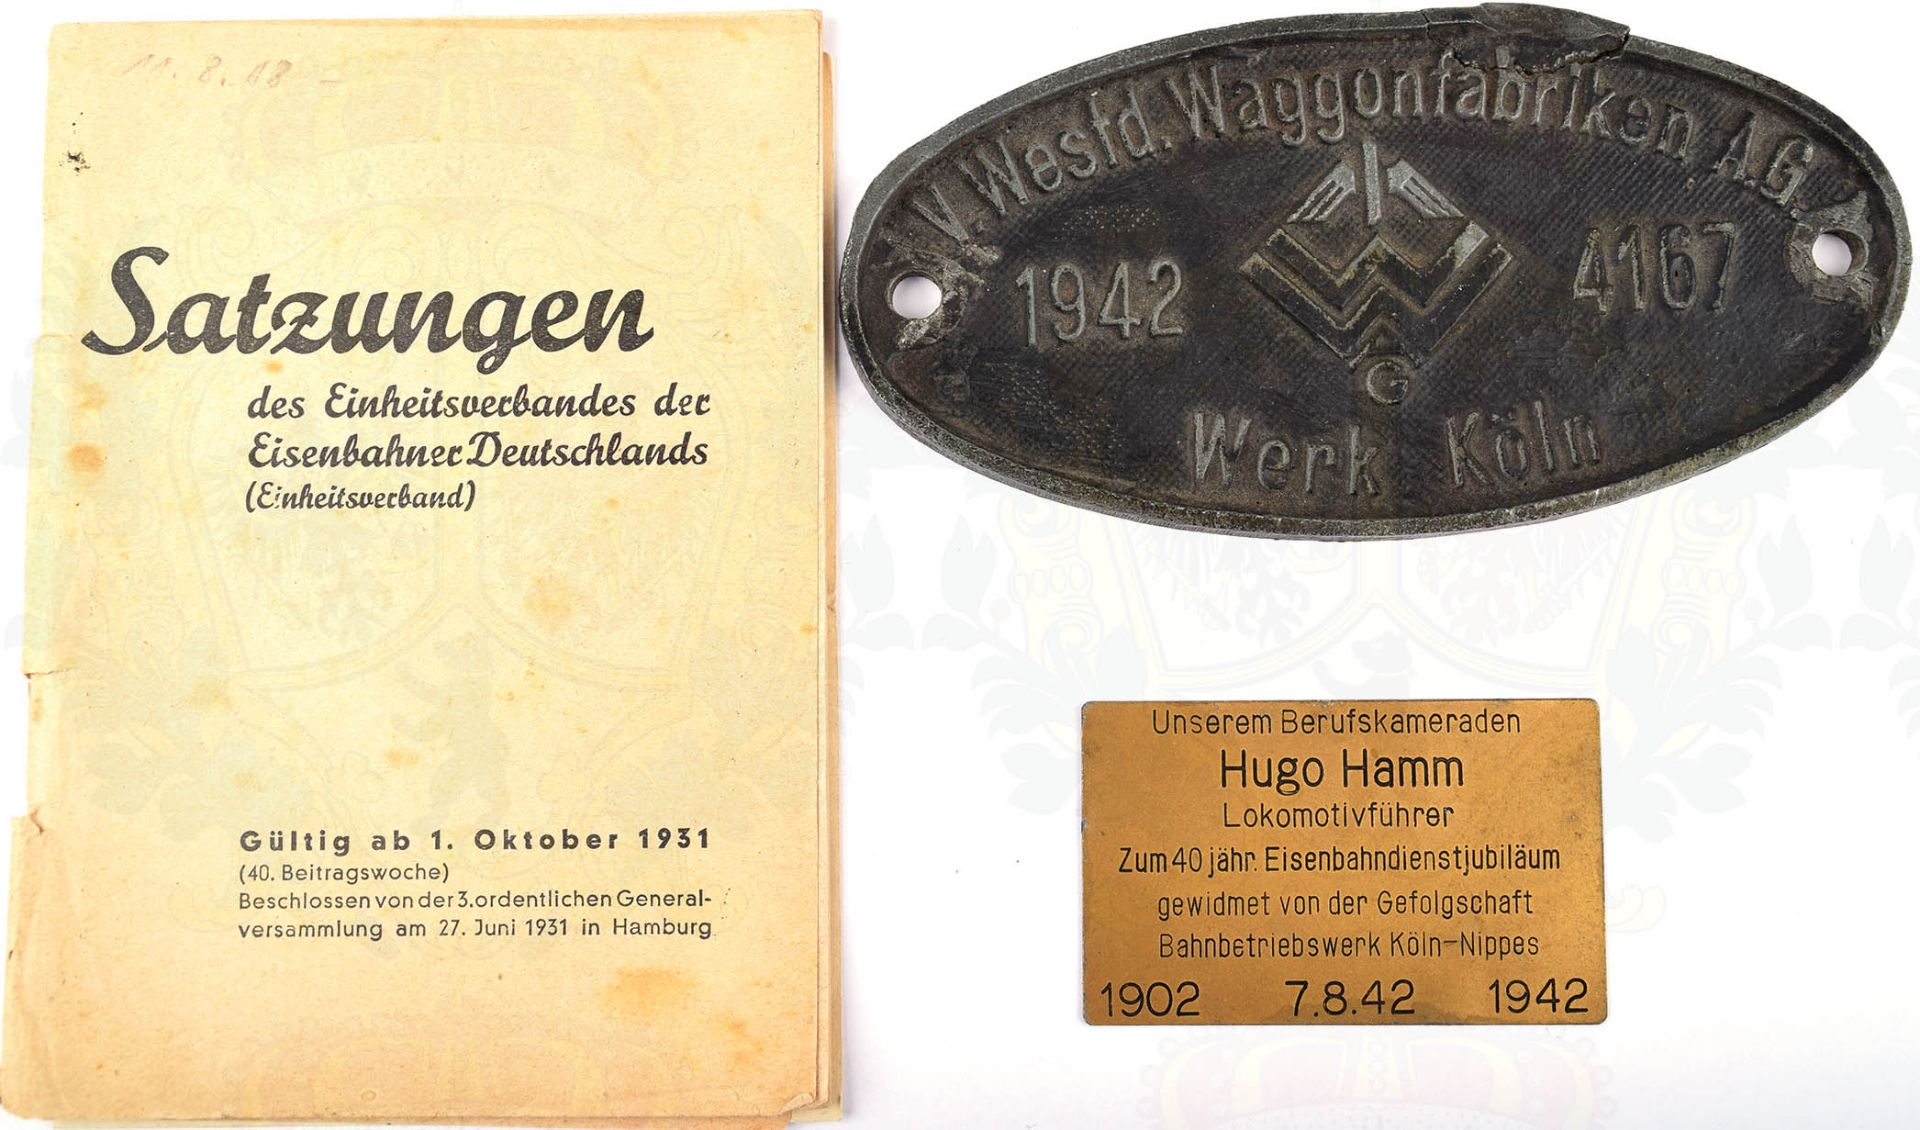 KONVOLUT REICHSBAHN, Waggonschild „V. Westd. Waggonfabriken A.G. 1942 Werk Köln“, Feinzink/pat.,